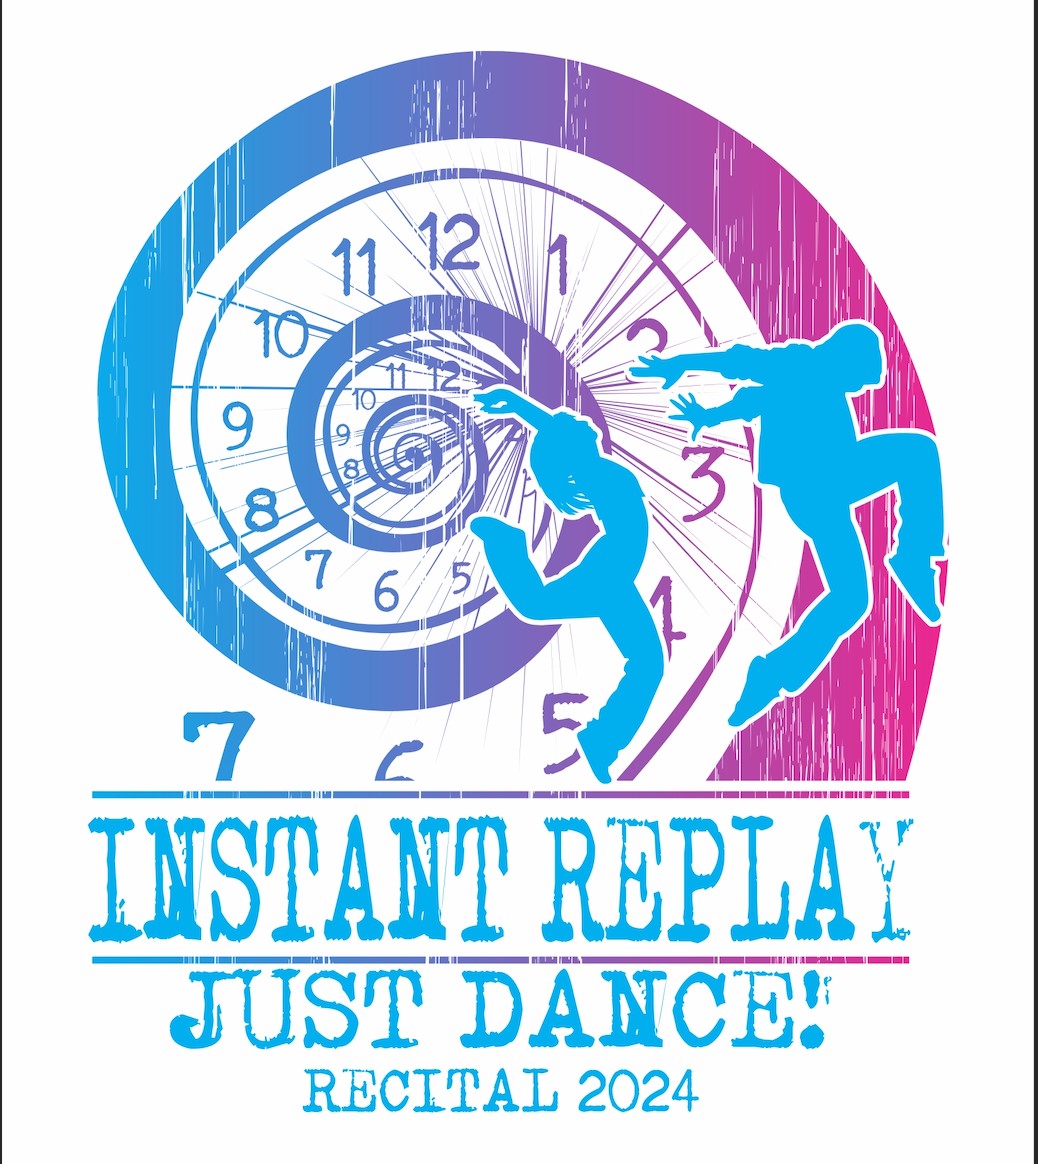 Instant Replay 2024 JUST DANCE! RECITAL on juin 03, 00:00@Yorktown Stage 2023 - Choisissez un siège,Achetez des billets et obtenez des informations surYorktown Stage 